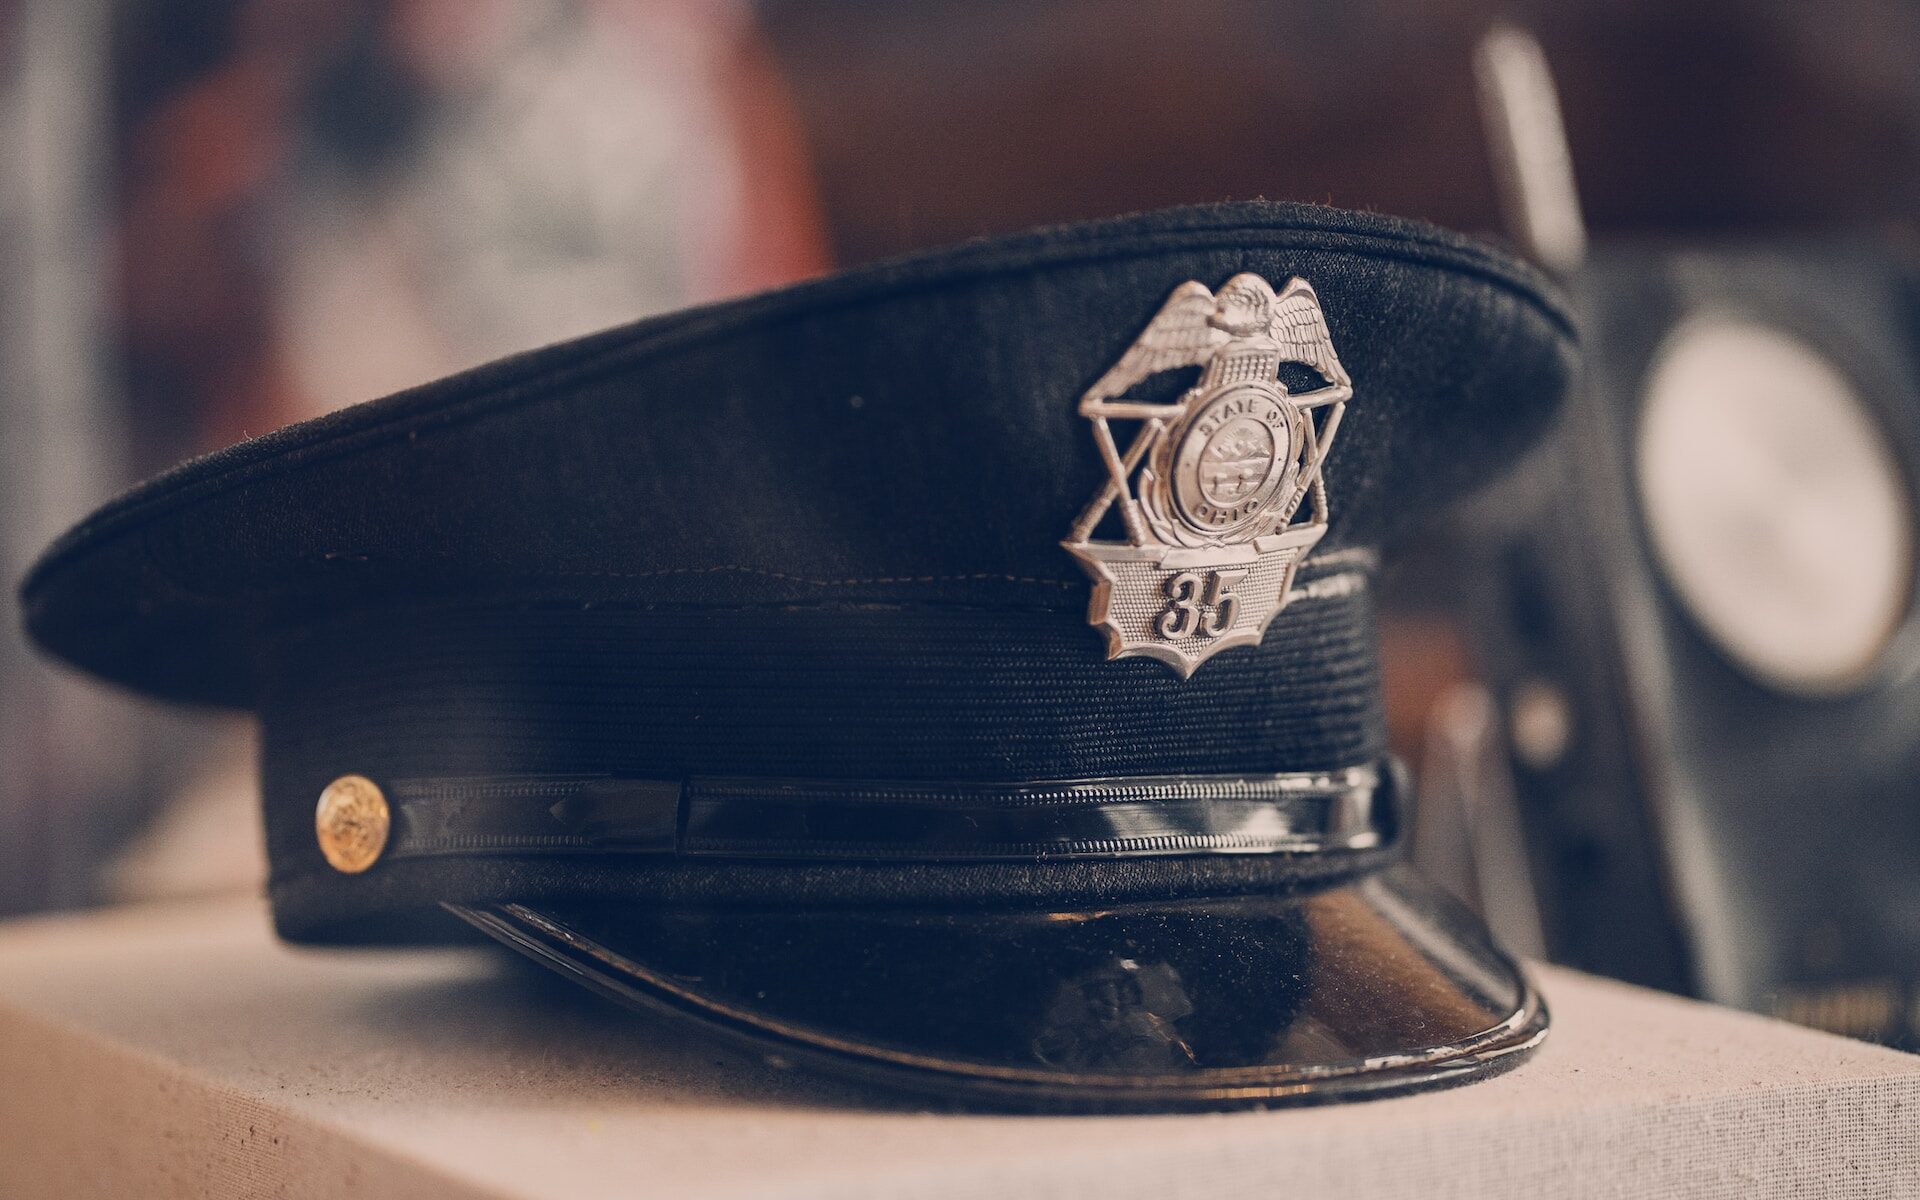 Black police officer hat sitting on desk